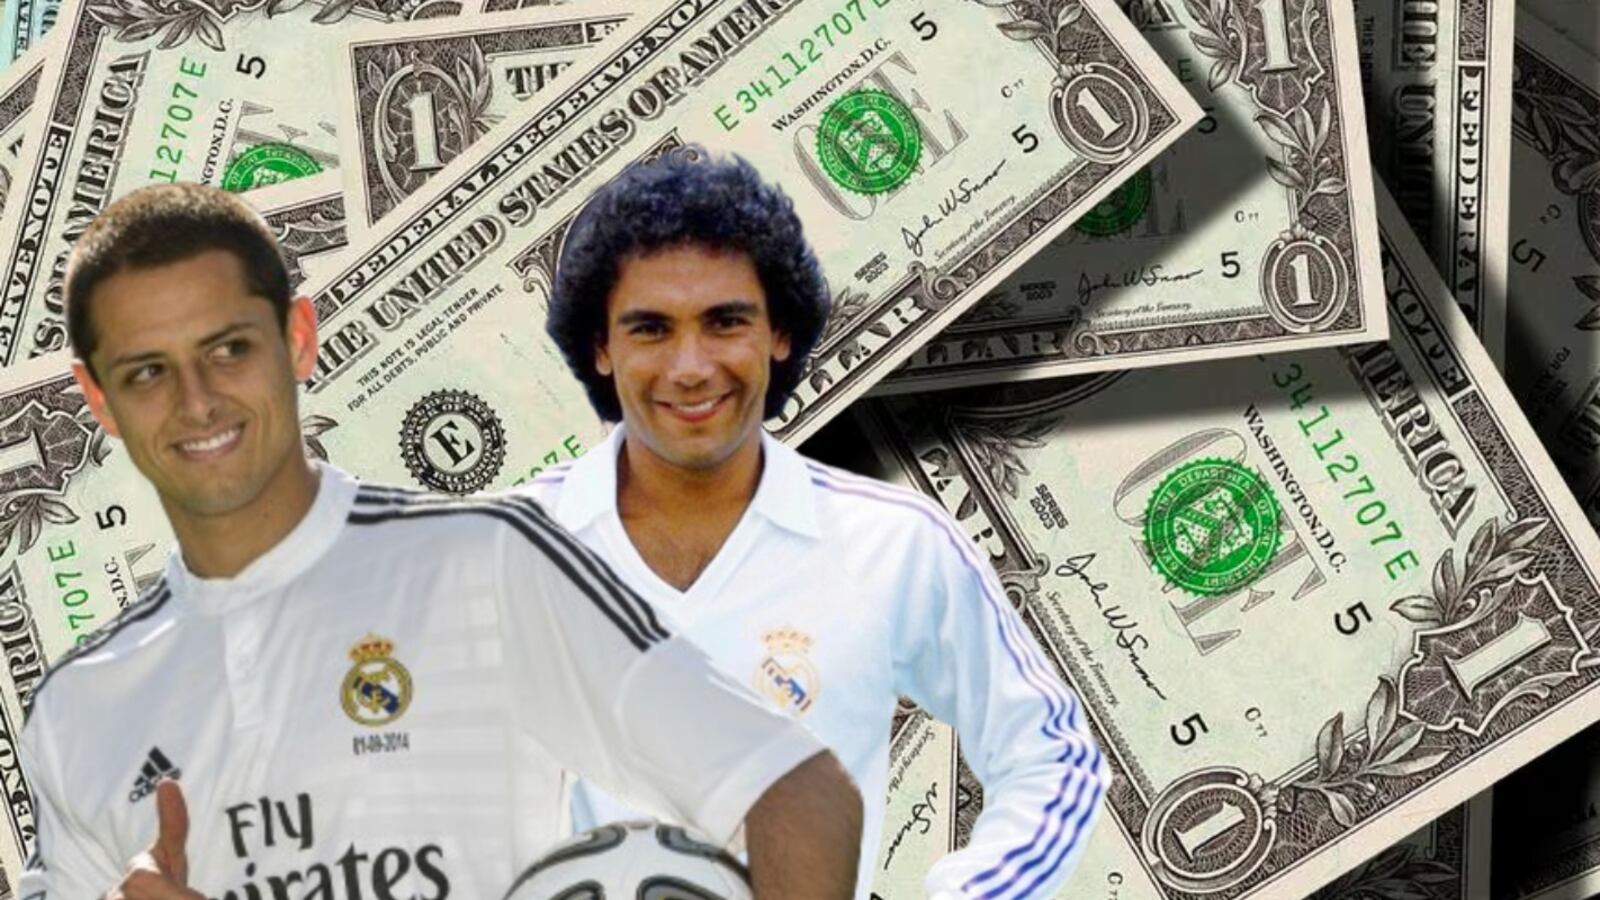 La diferencia entre el salario de Hugo Sánchez y el de Chicharito en Real Madrid